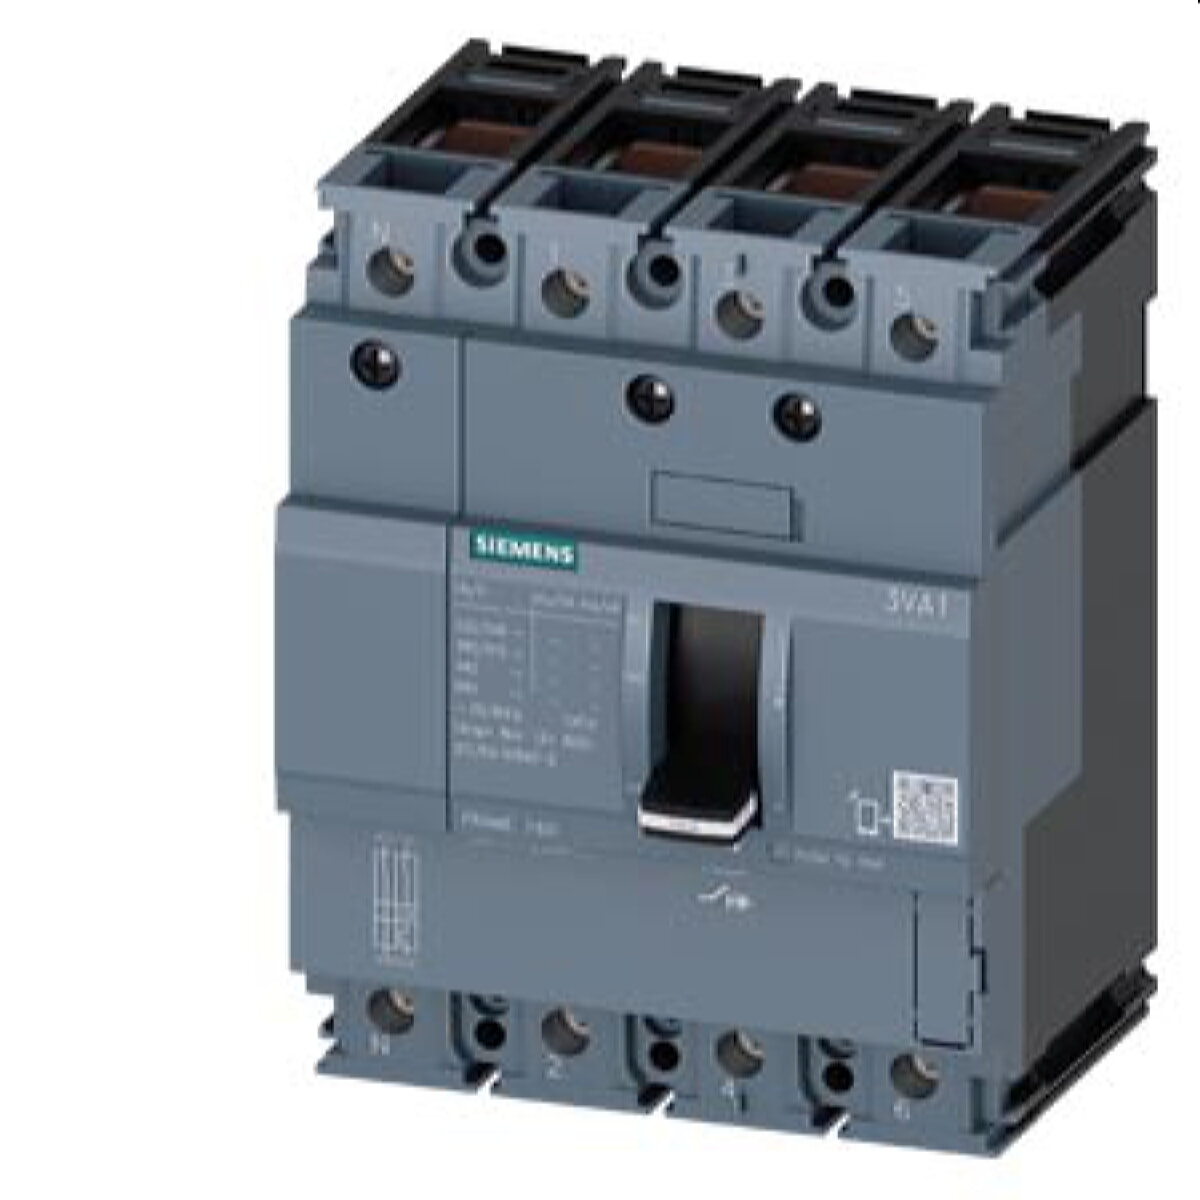 Siemens Leistungsschalter 3VA1 55kA TM210 FTFM 80A 3VA1180-5ED46-0AA0